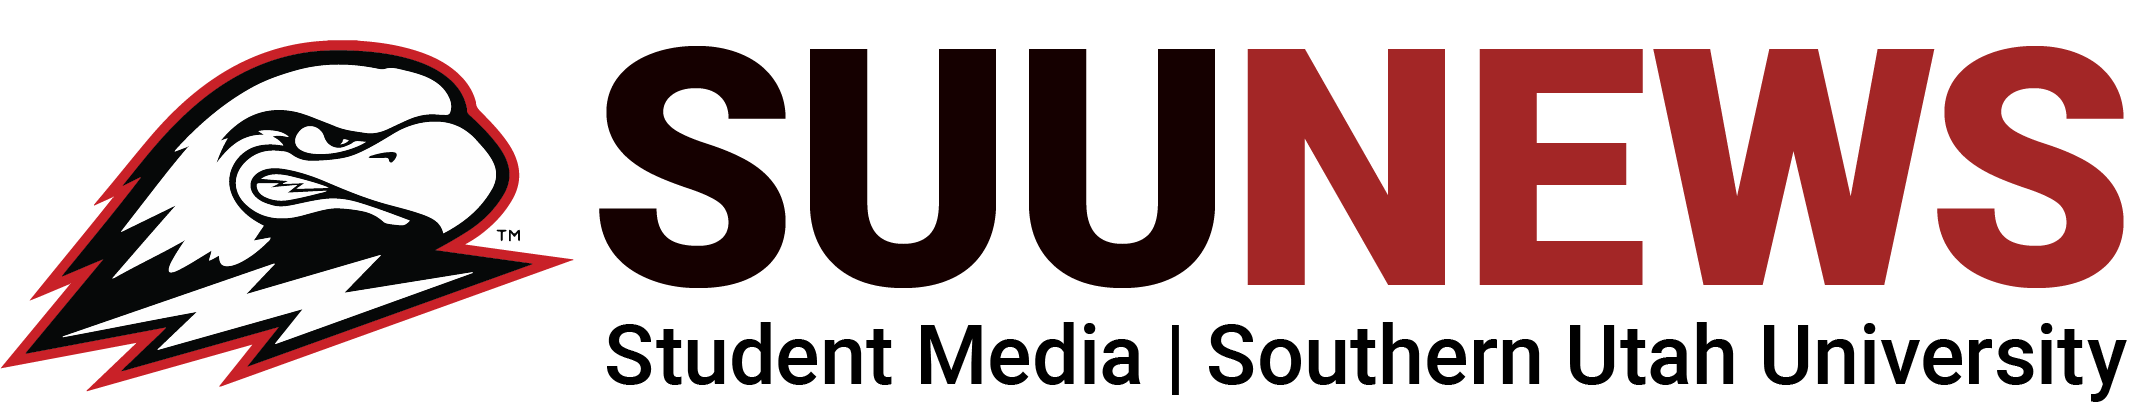 Suu Logo - SUU News - Student Media | Southern Utah University